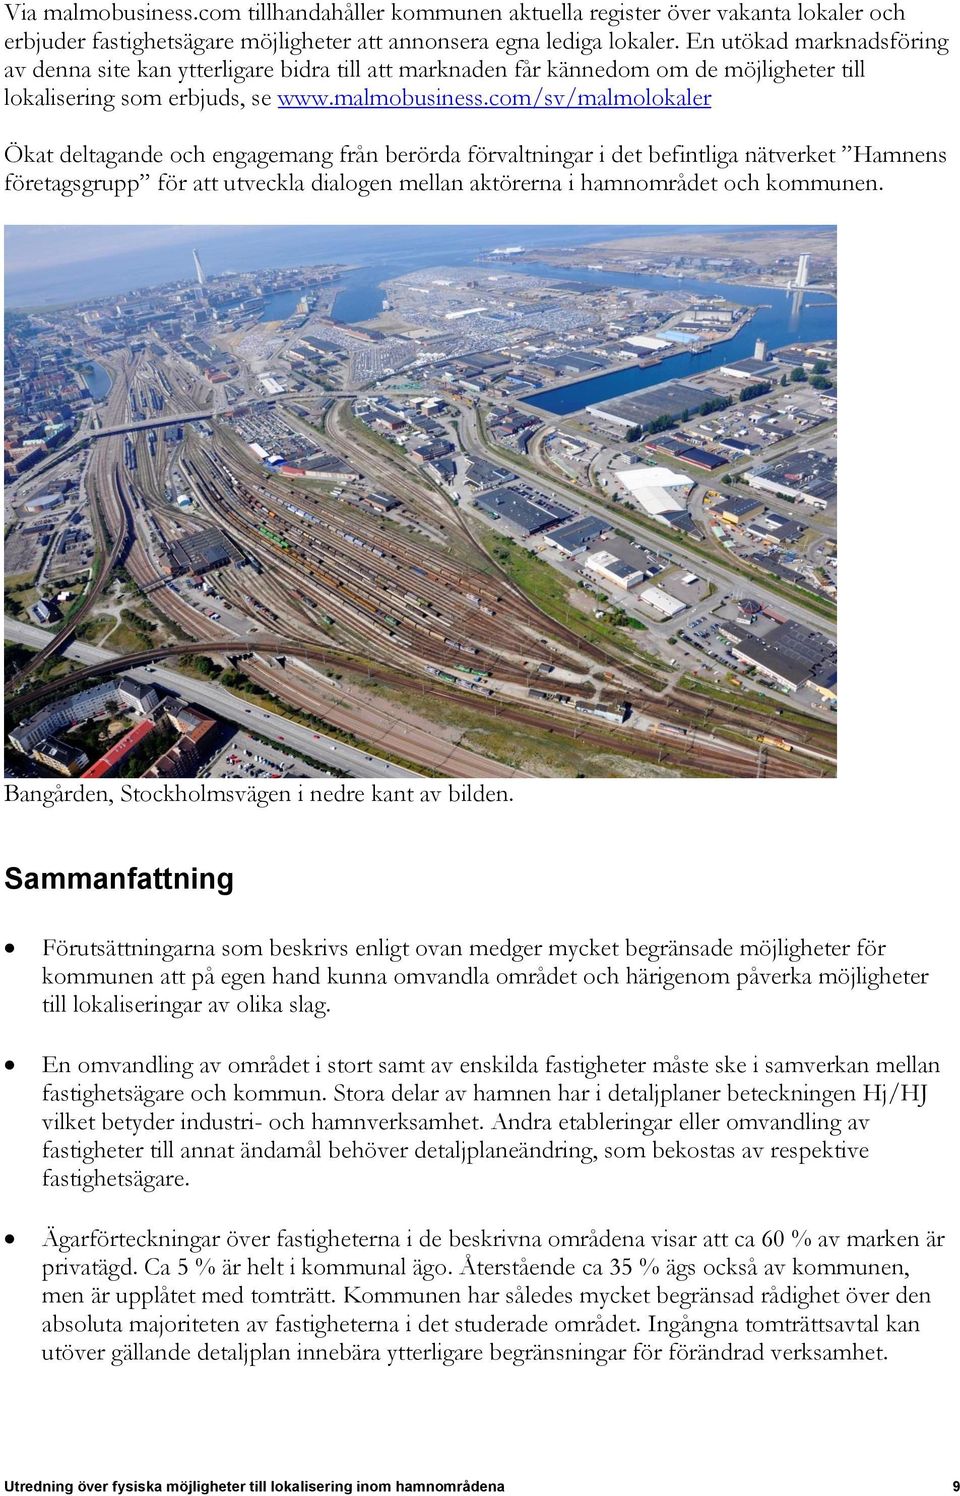 com/sv/malmolokaler Ökat deltagande och engagemang från berörda förvaltningar i det befintliga nätverket Hamnens företagsgrupp för att utveckla dialogen mellan aktörerna i hamnområdet och kommunen.